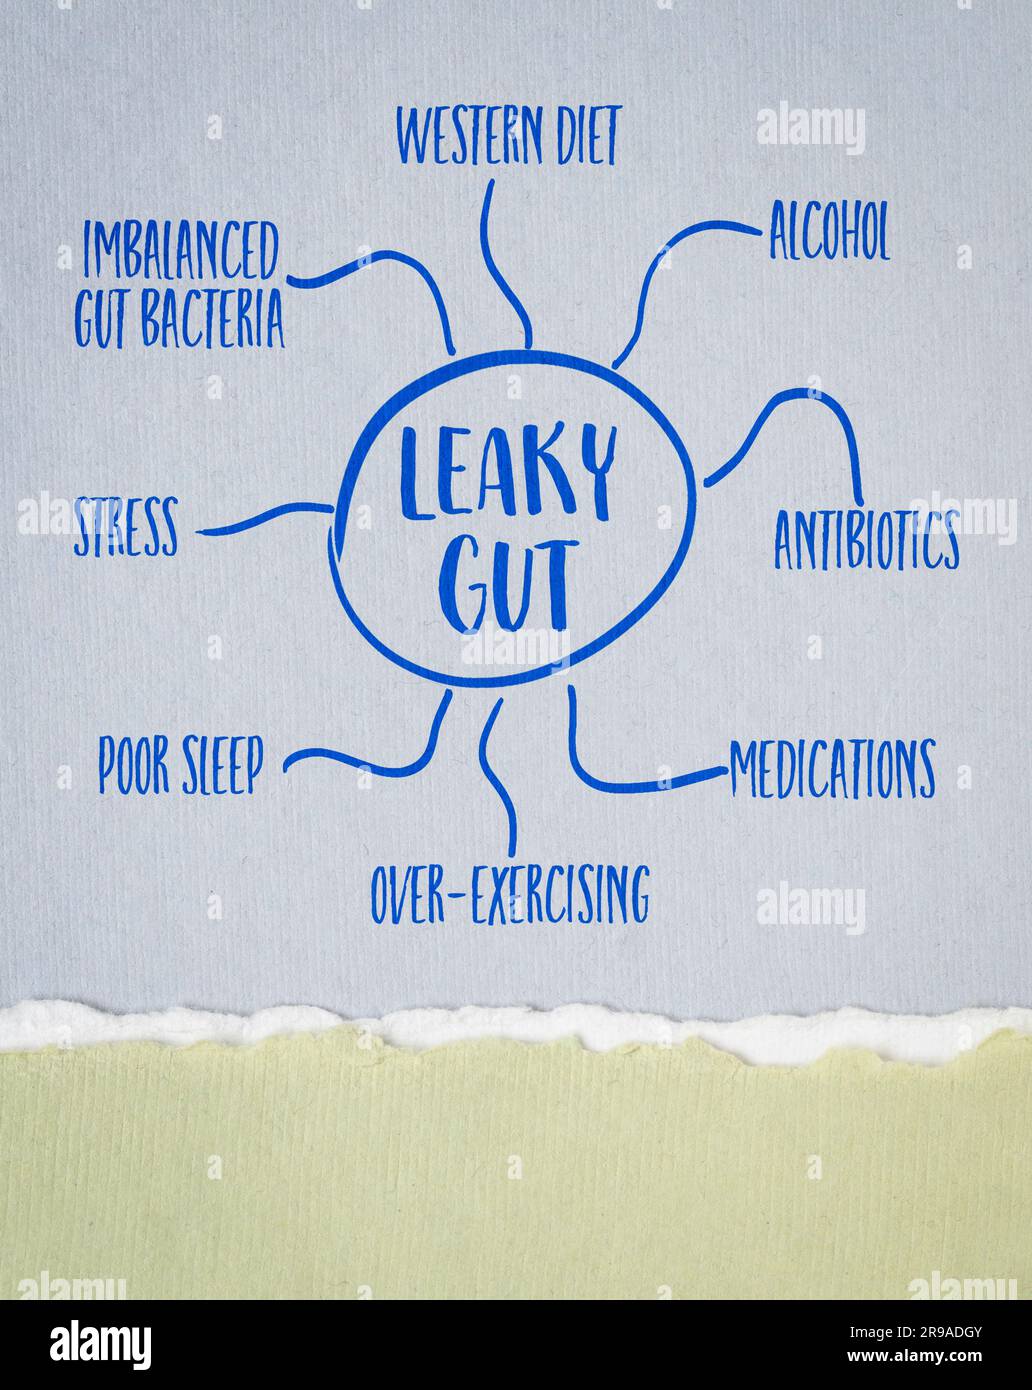 Ursachen des Leaky-Darm-Syndroms - Mindmap-Skizze auf Kunstpapier, Verdauungs-Gesundheitskonzept Stockfoto